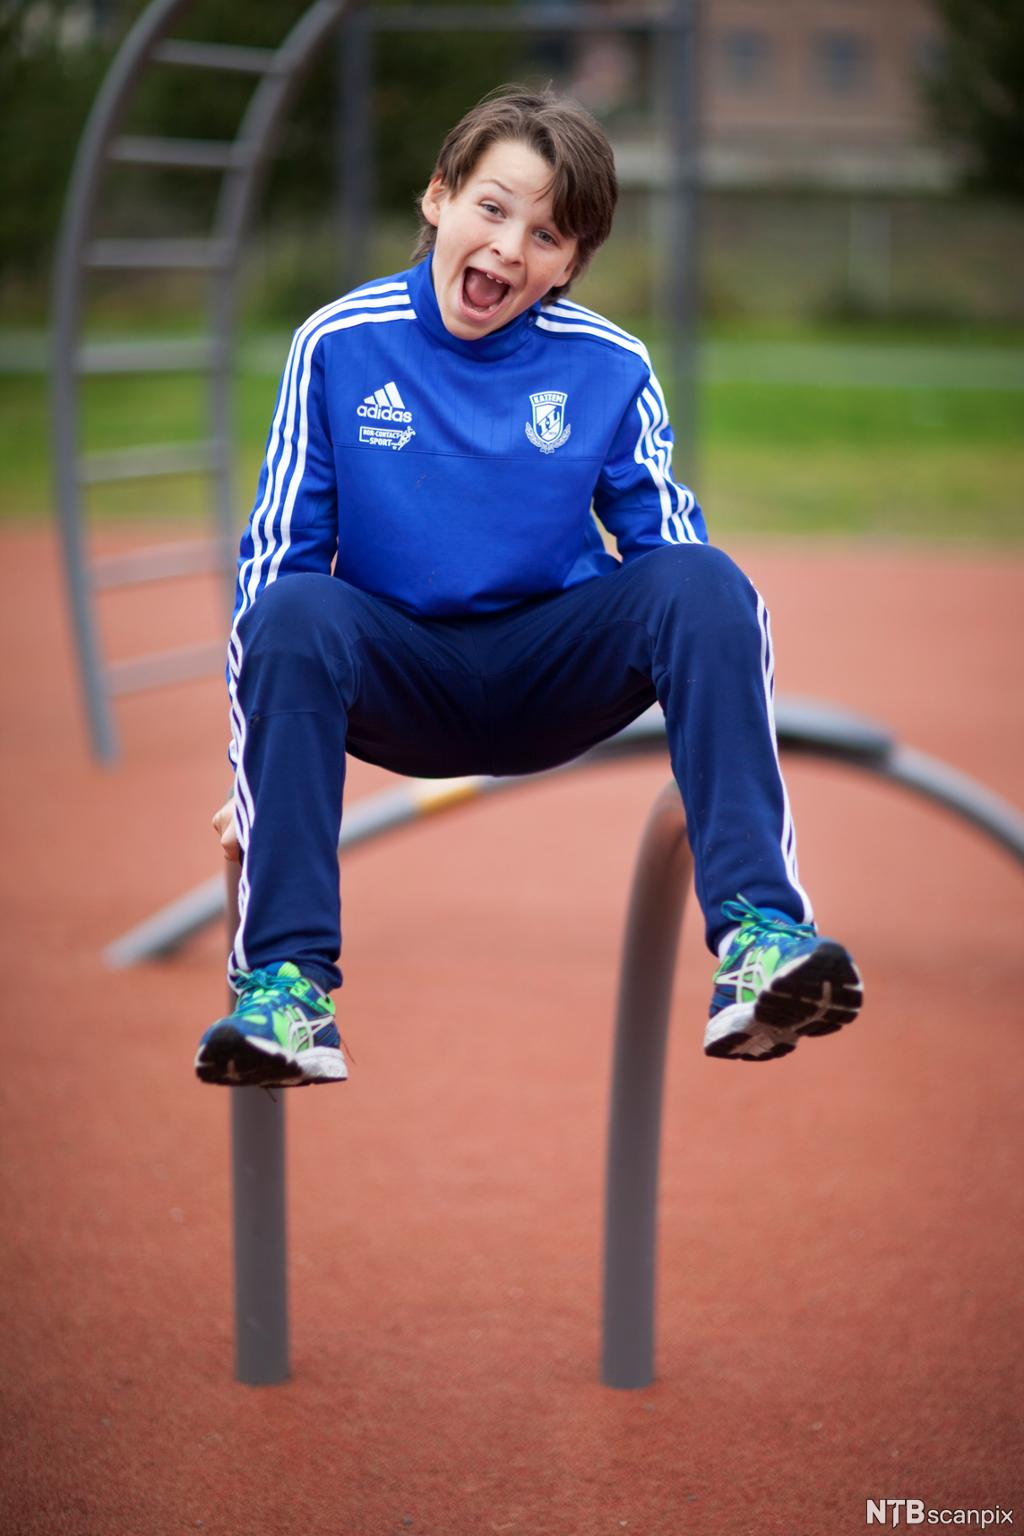 En glad gutt med treningstøy på utfolder seg i en utendørs treningspark. Foto.